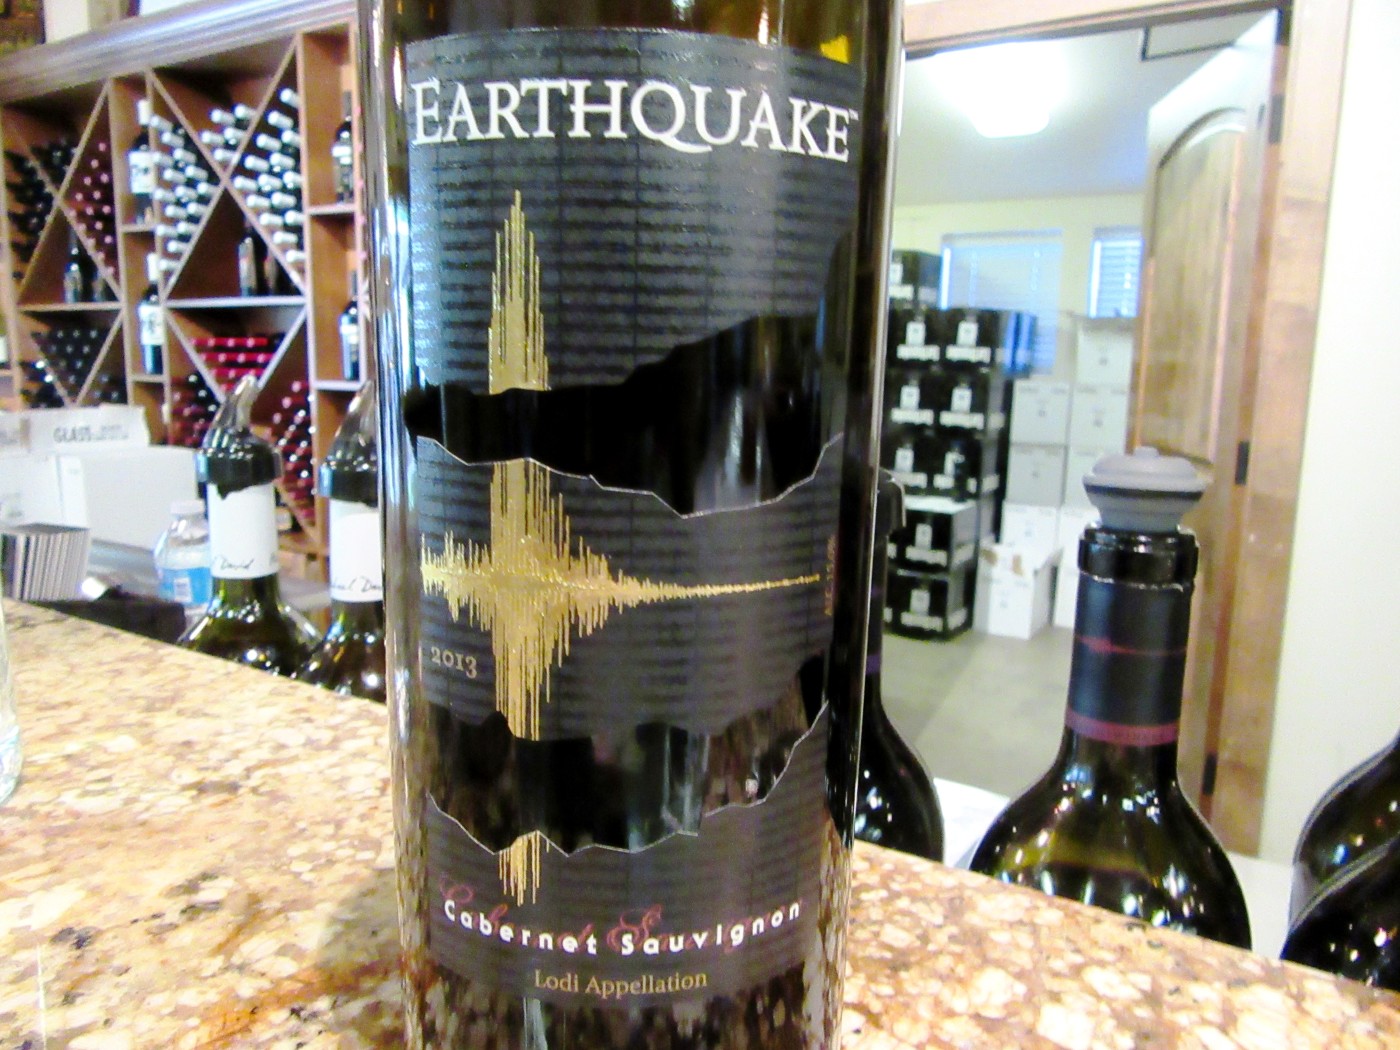 Michael David Winery, Earthquake Cabernet Sauvignon 2013, Lodi, California, Wine Casual